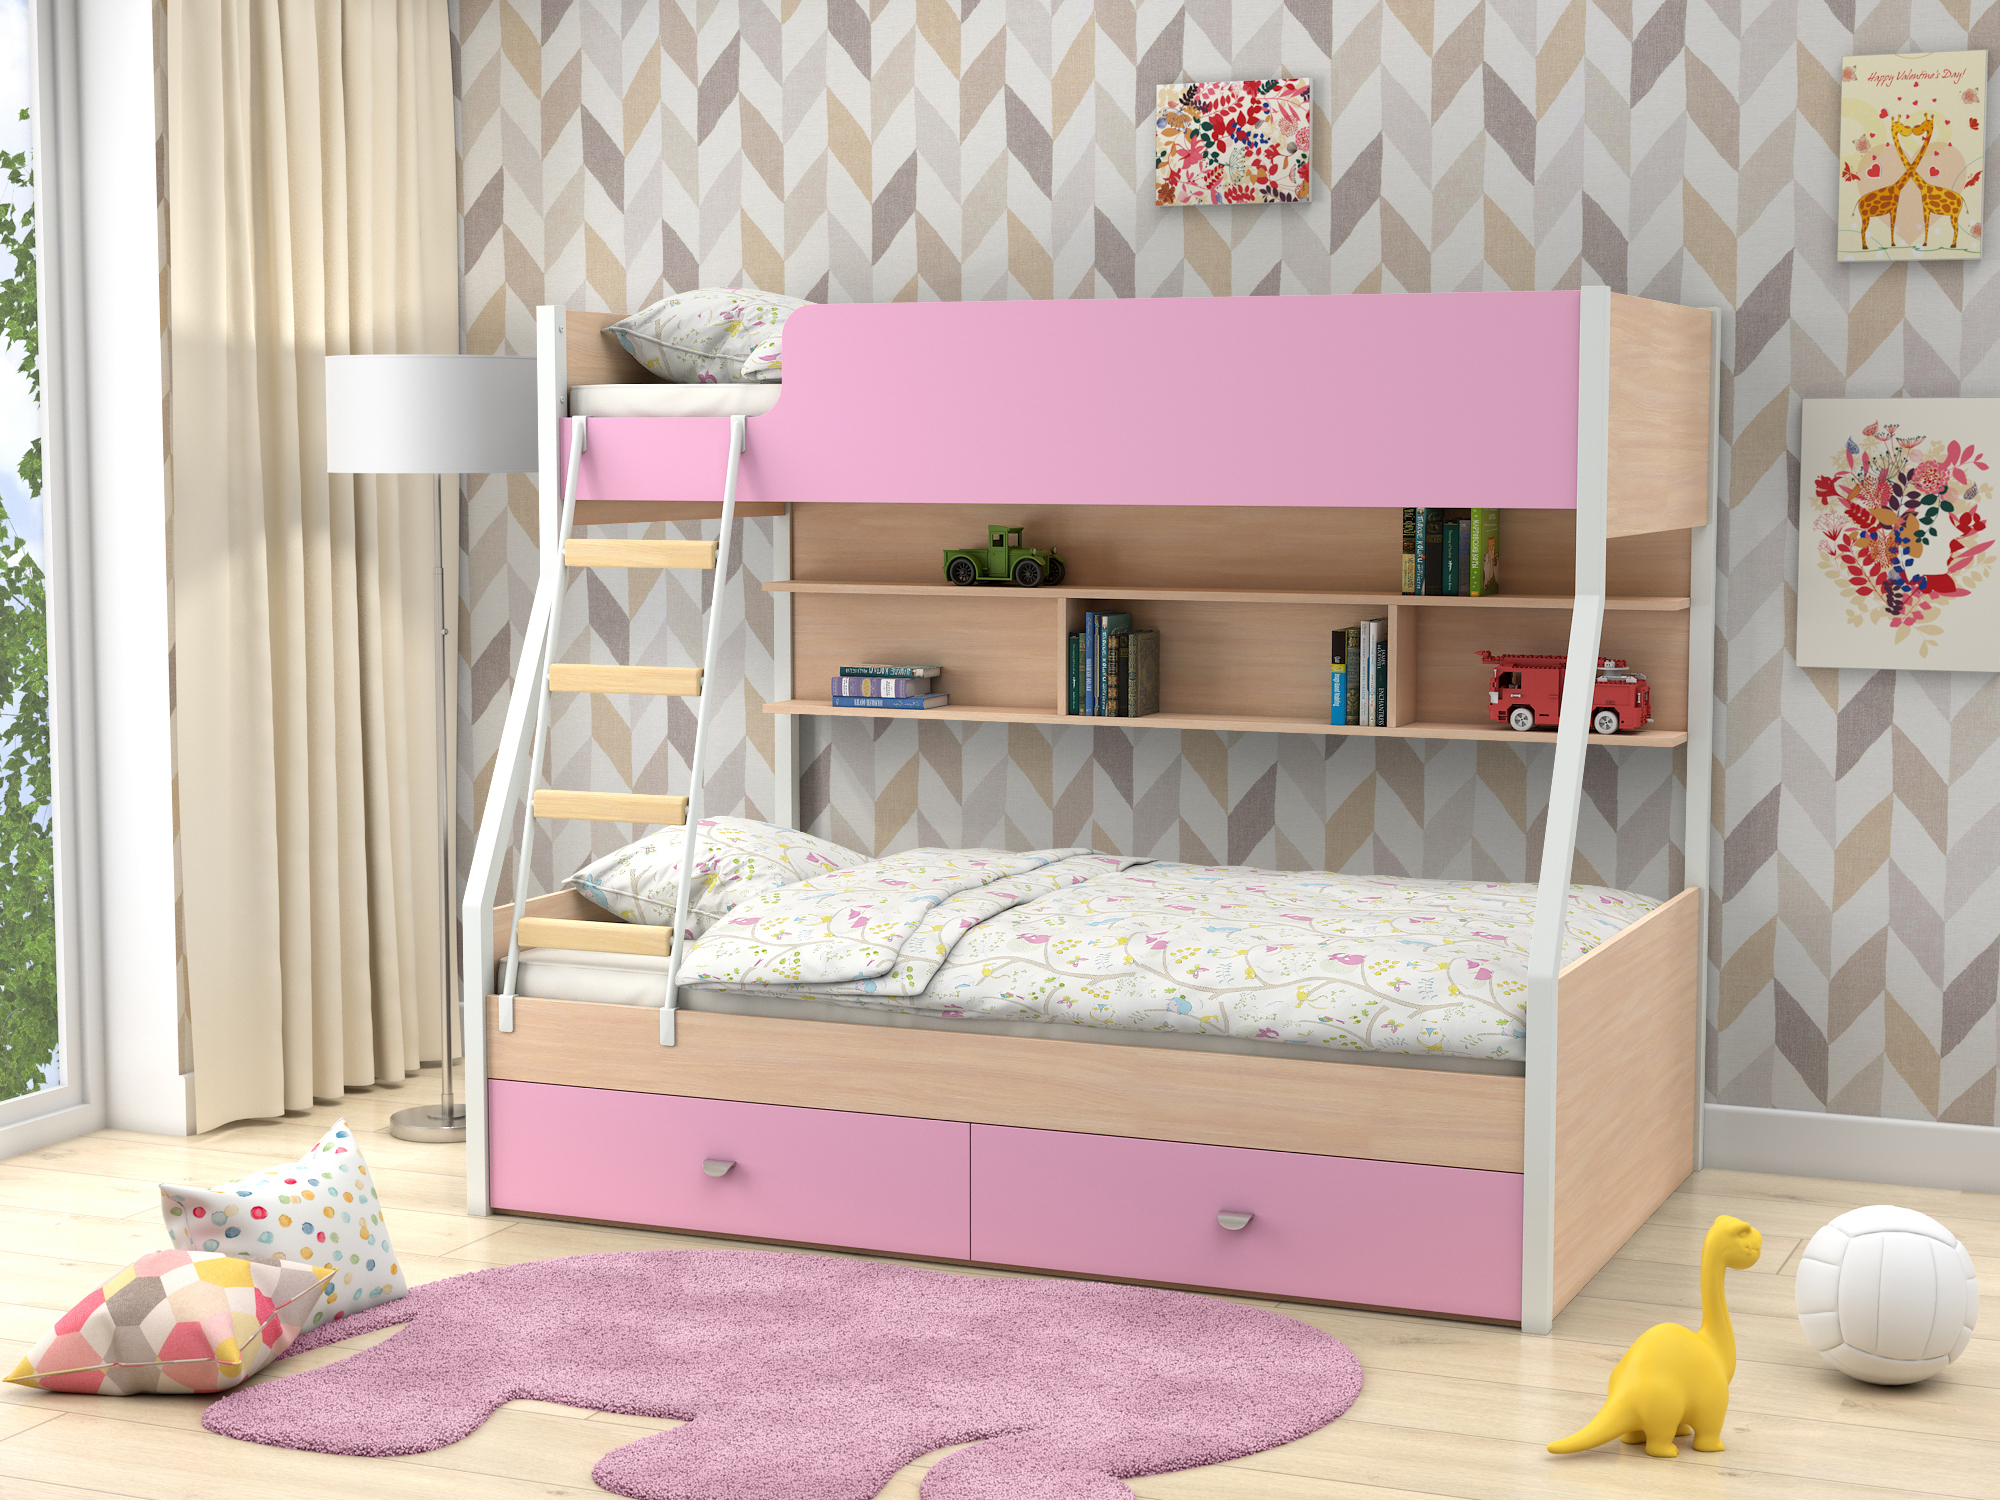 Двухъярусная кровать Golden Kids-3 (90х190/120х190) Розовый, Белый, Бежевый, ЛДСП двухъярусная кровать golden kids 3 90х190 120х190 зеленый белый бежевый лдсп